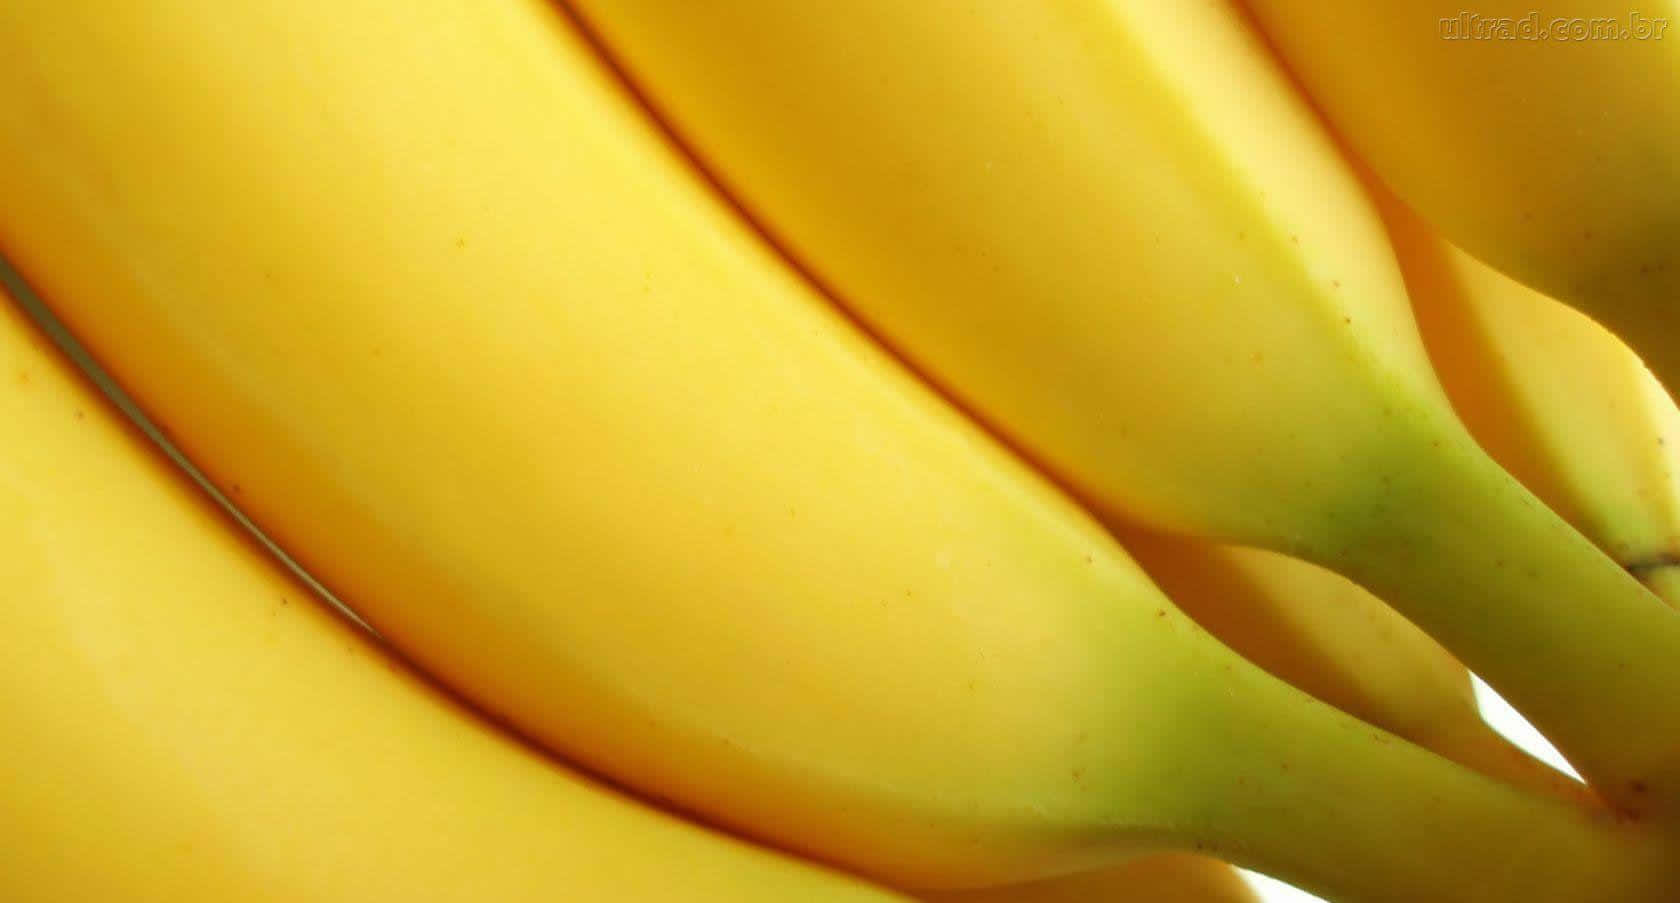 Unmazzo Di Banane Pronte Da Mangiare